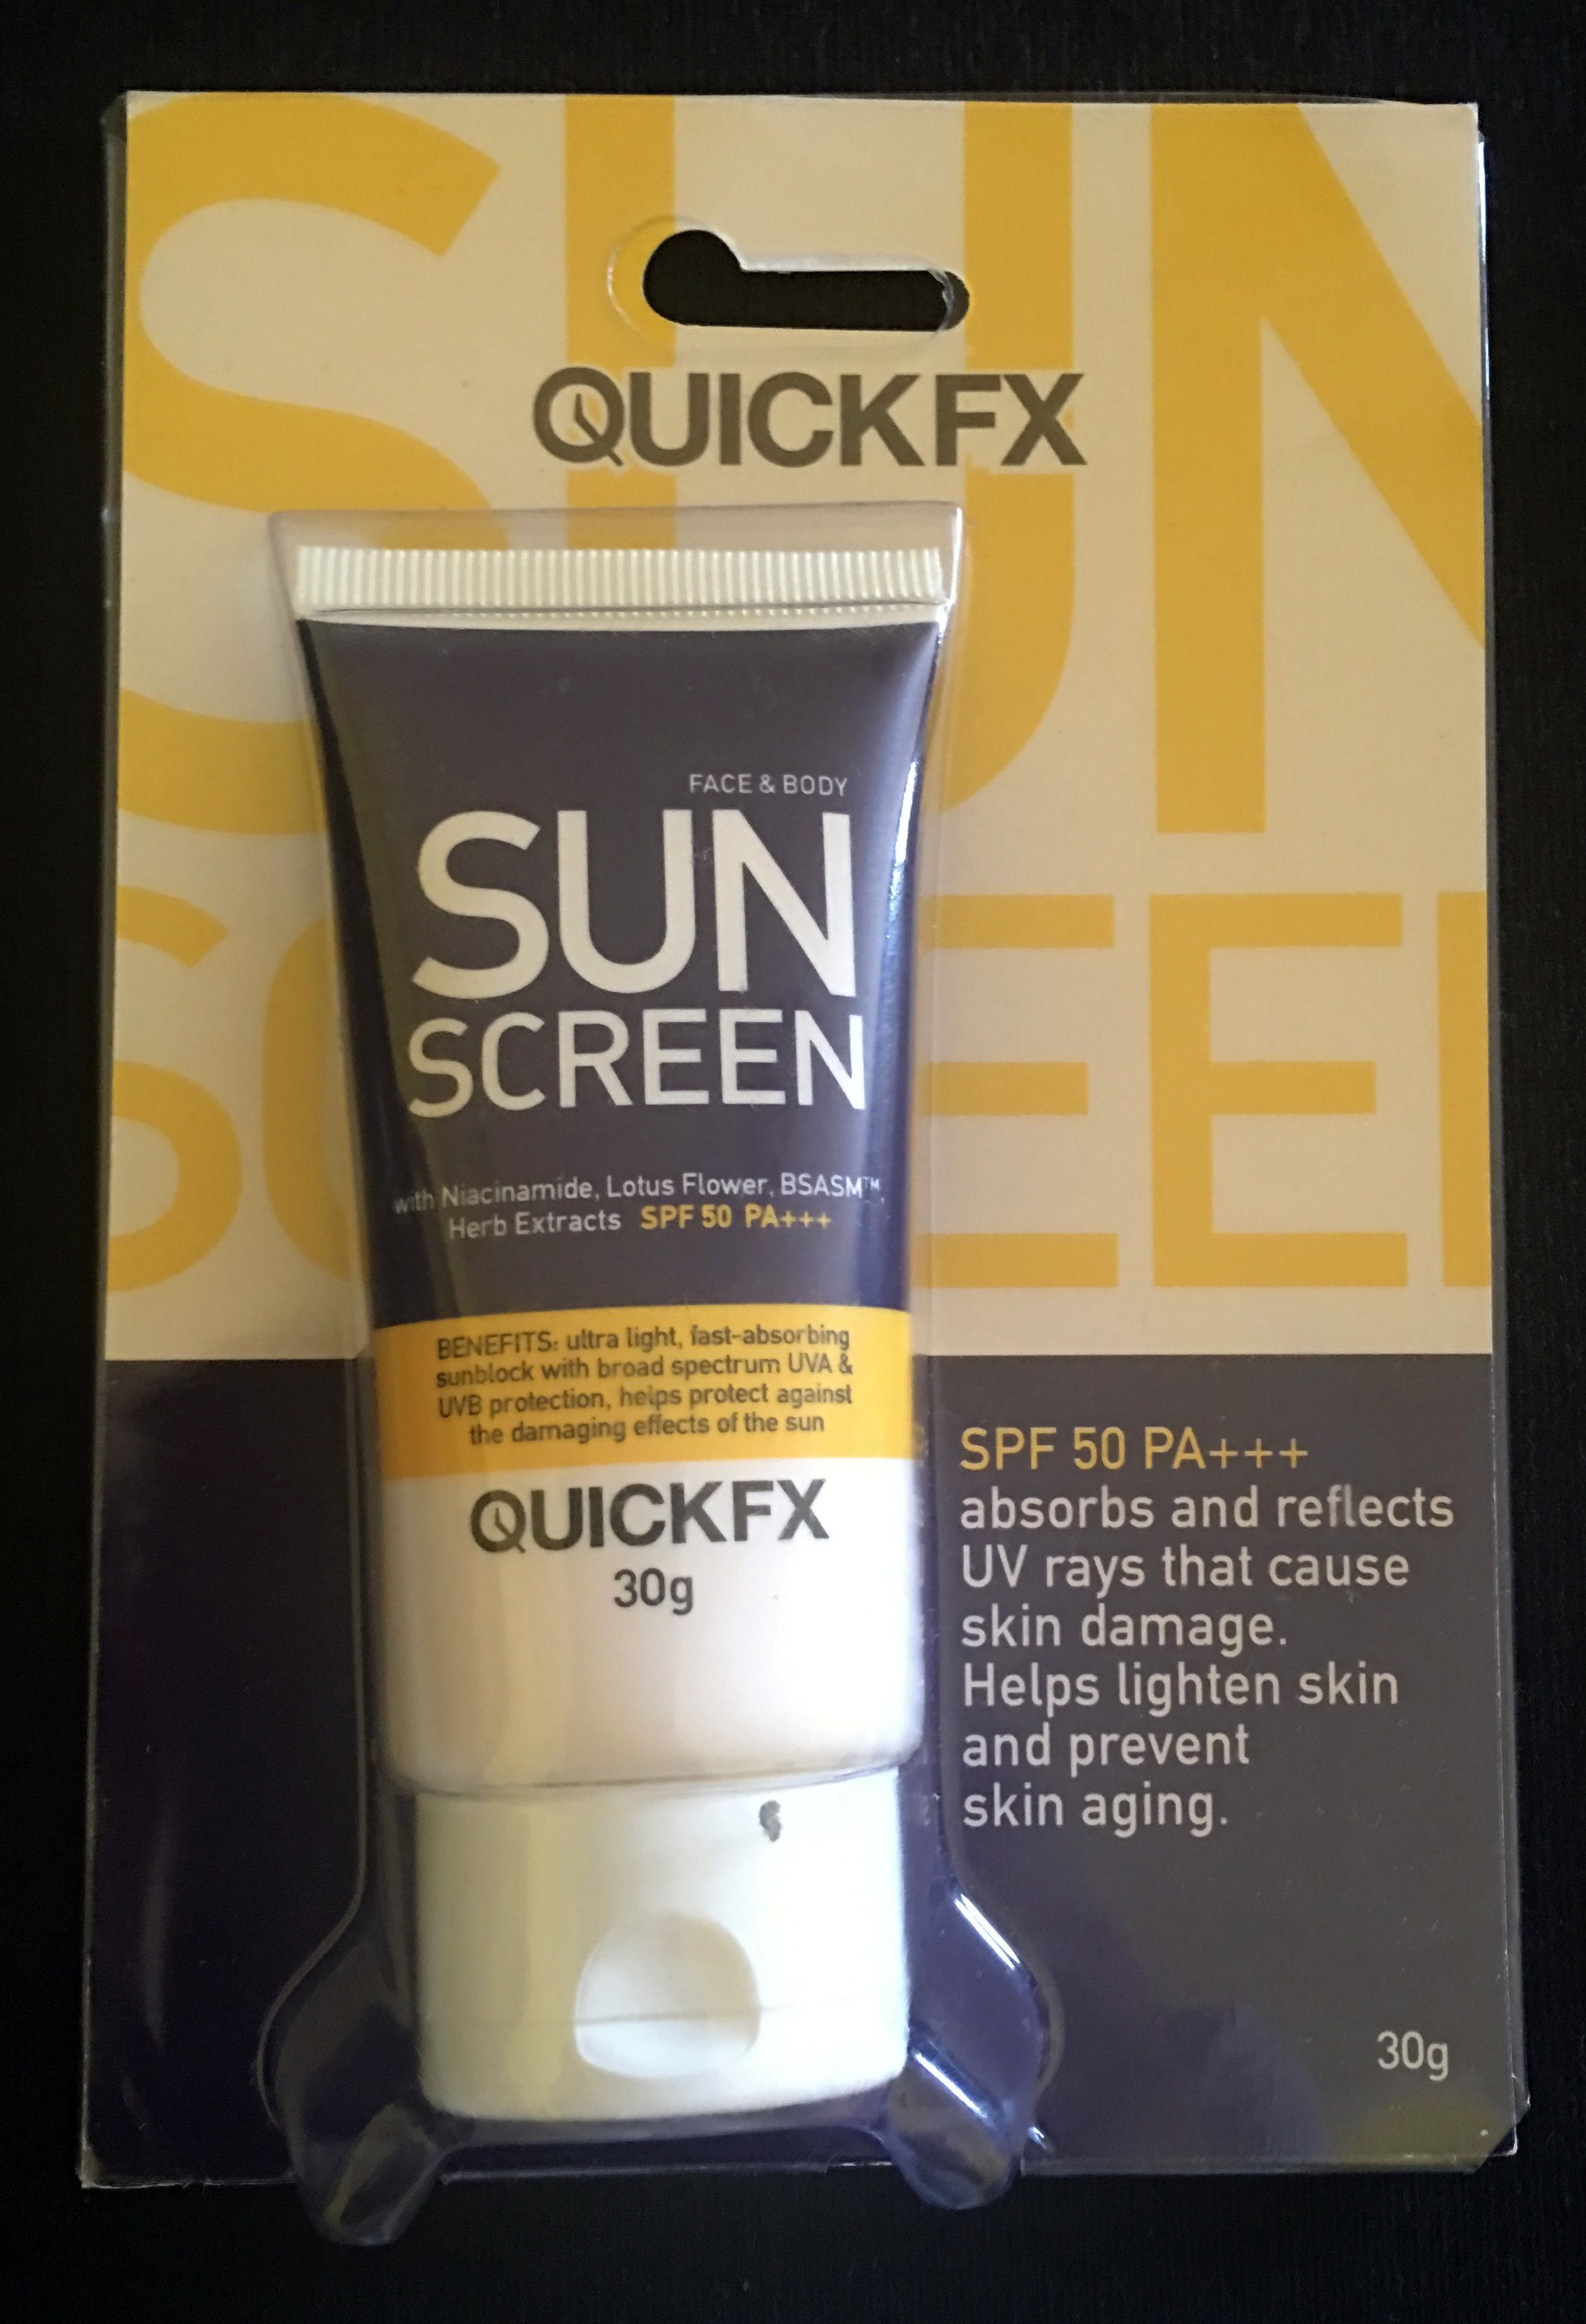 Quickfx Sunscreen